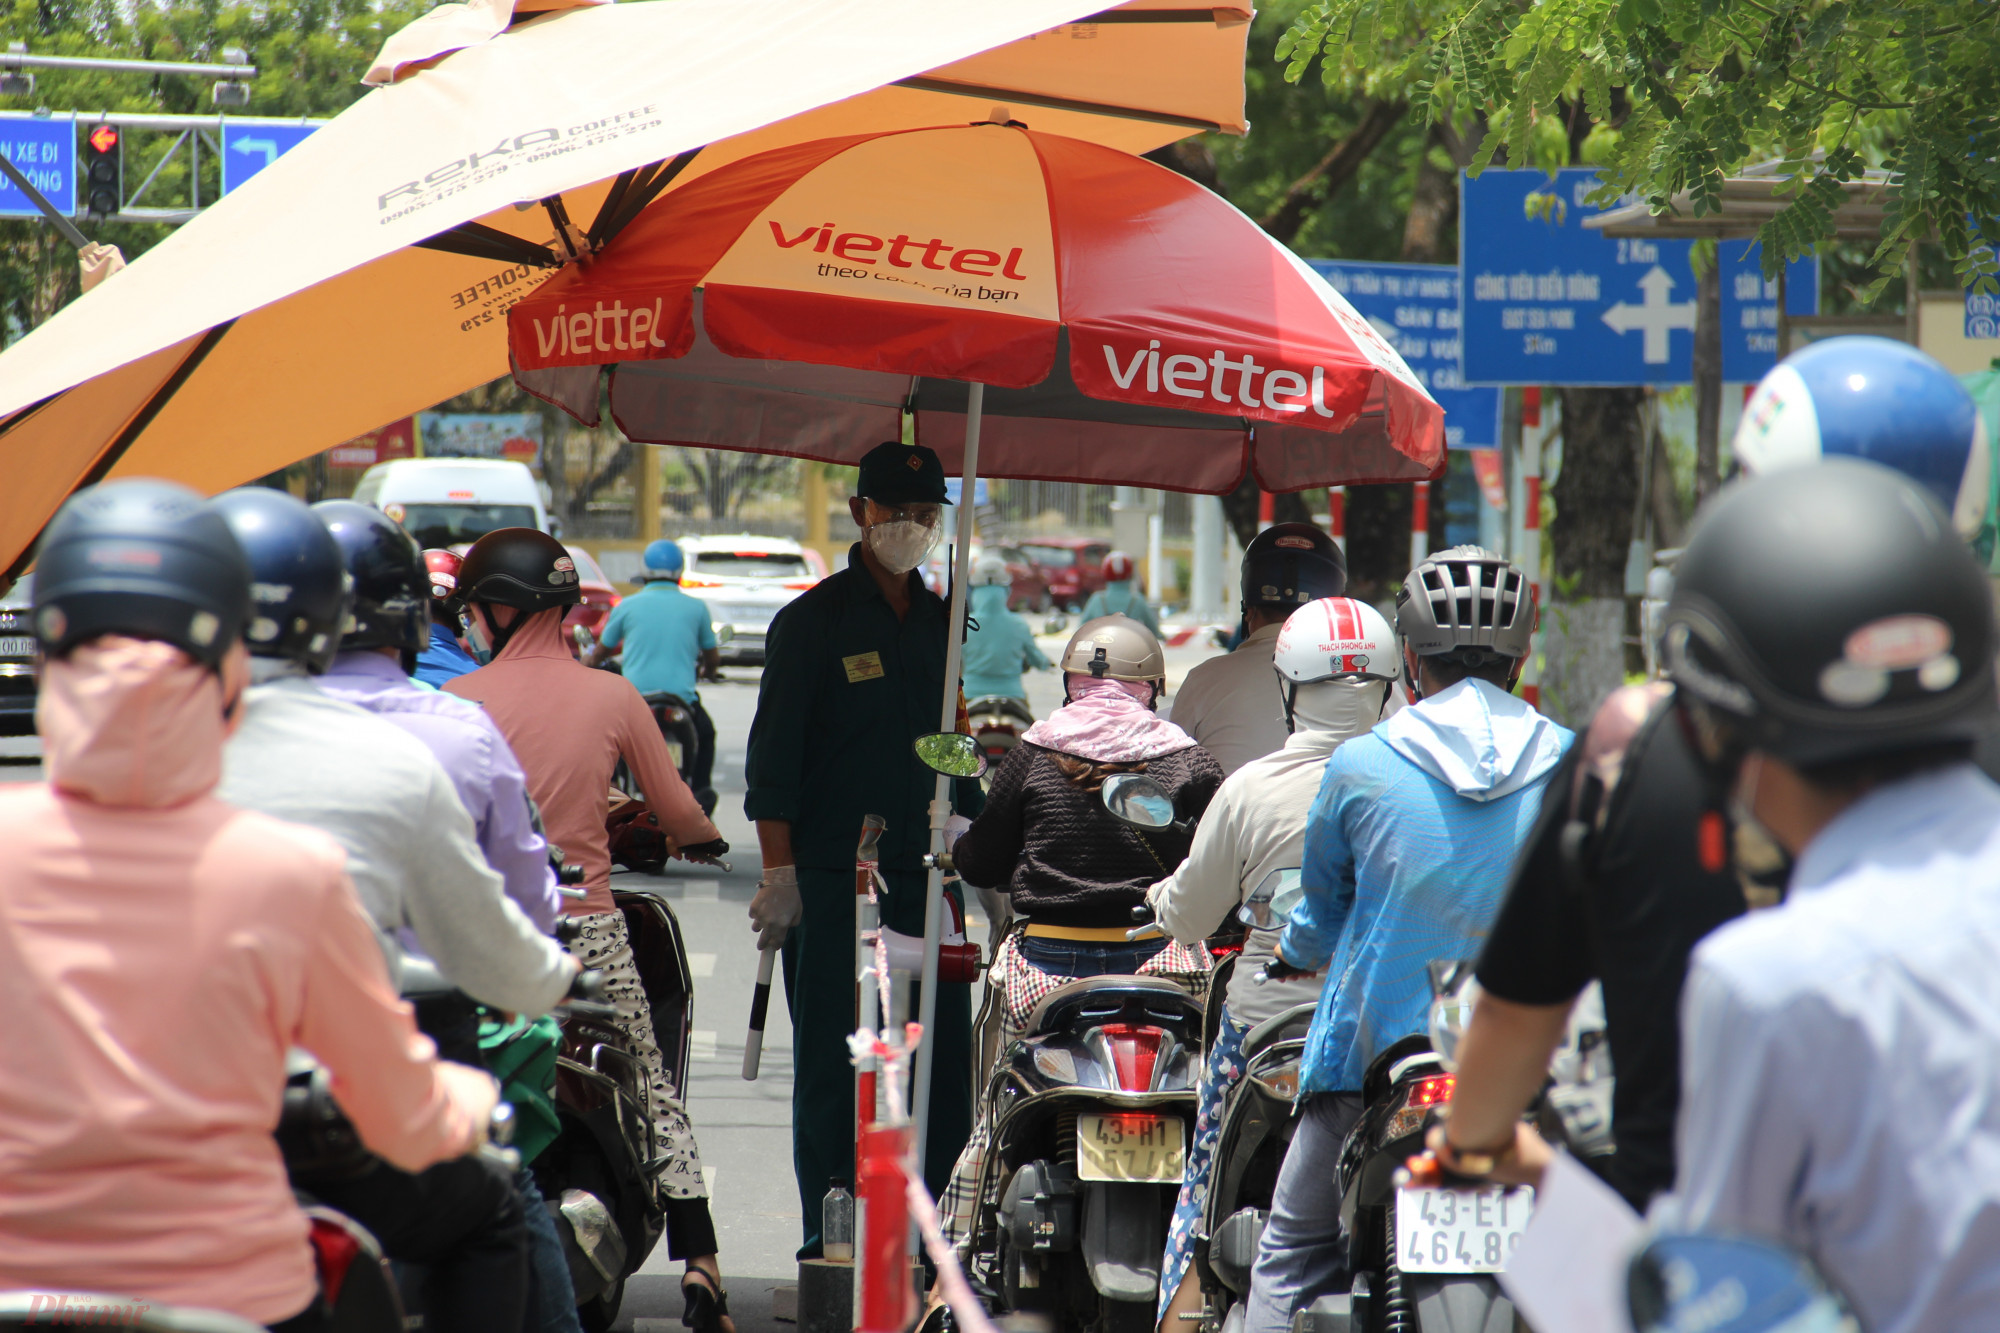 Từ 18g ngày 31/7, thành phố Đà Nẵng áp dụng Chỉ thị 16 kèm nhiều biện pháp mạnh hơn, trong đó yêu cầu người dân hạn chế ra đường